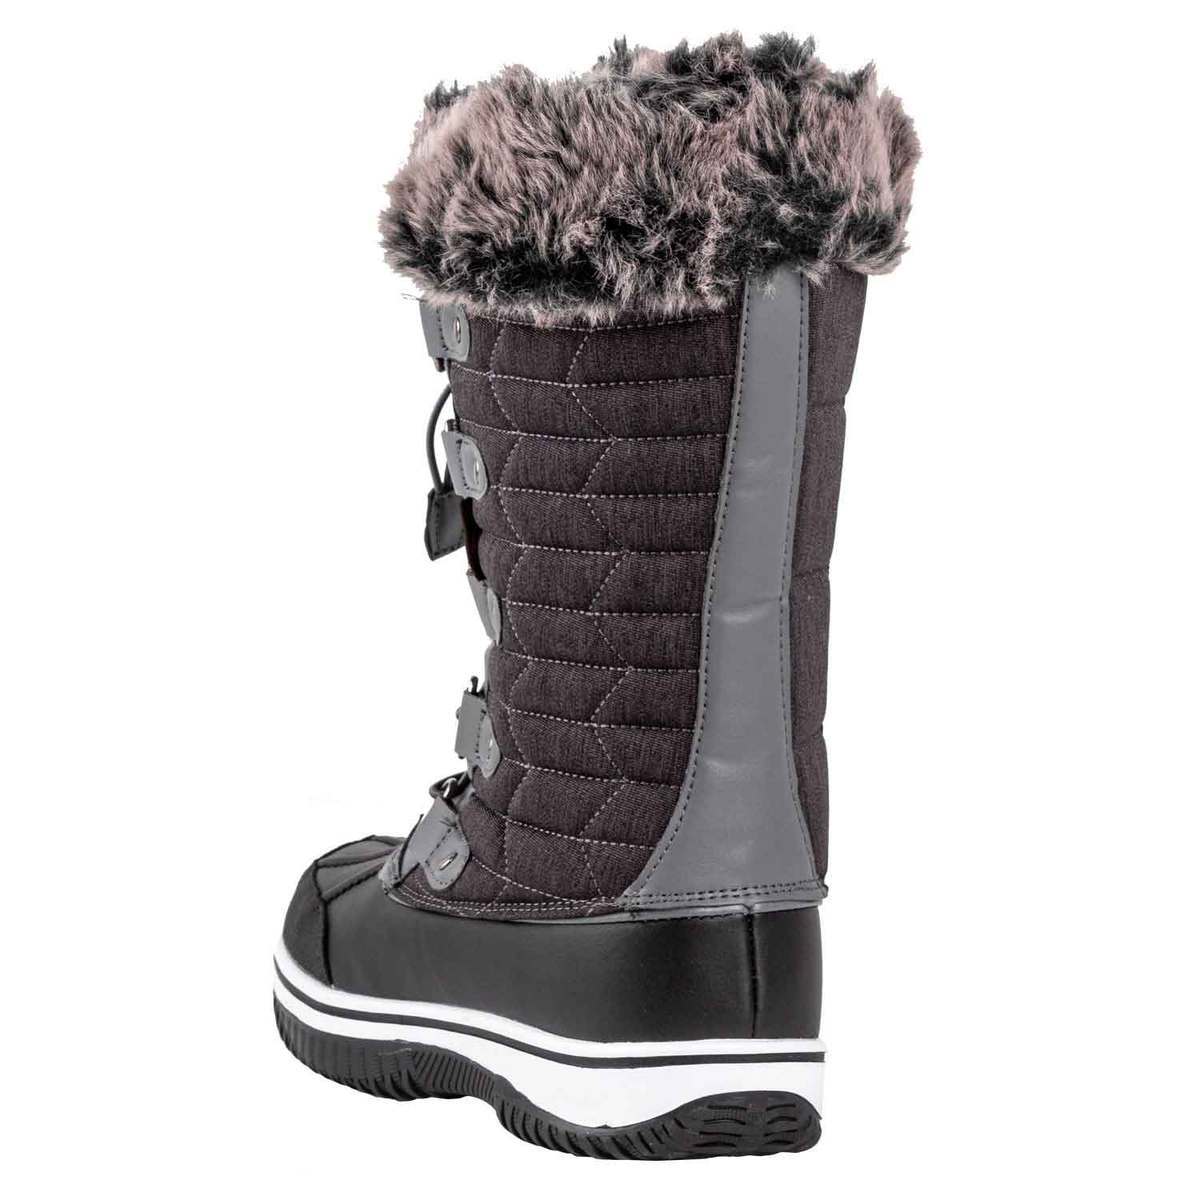 Tamarack Women's Karen Waterproof Winter Boots - Charcoal - Size 11 ...